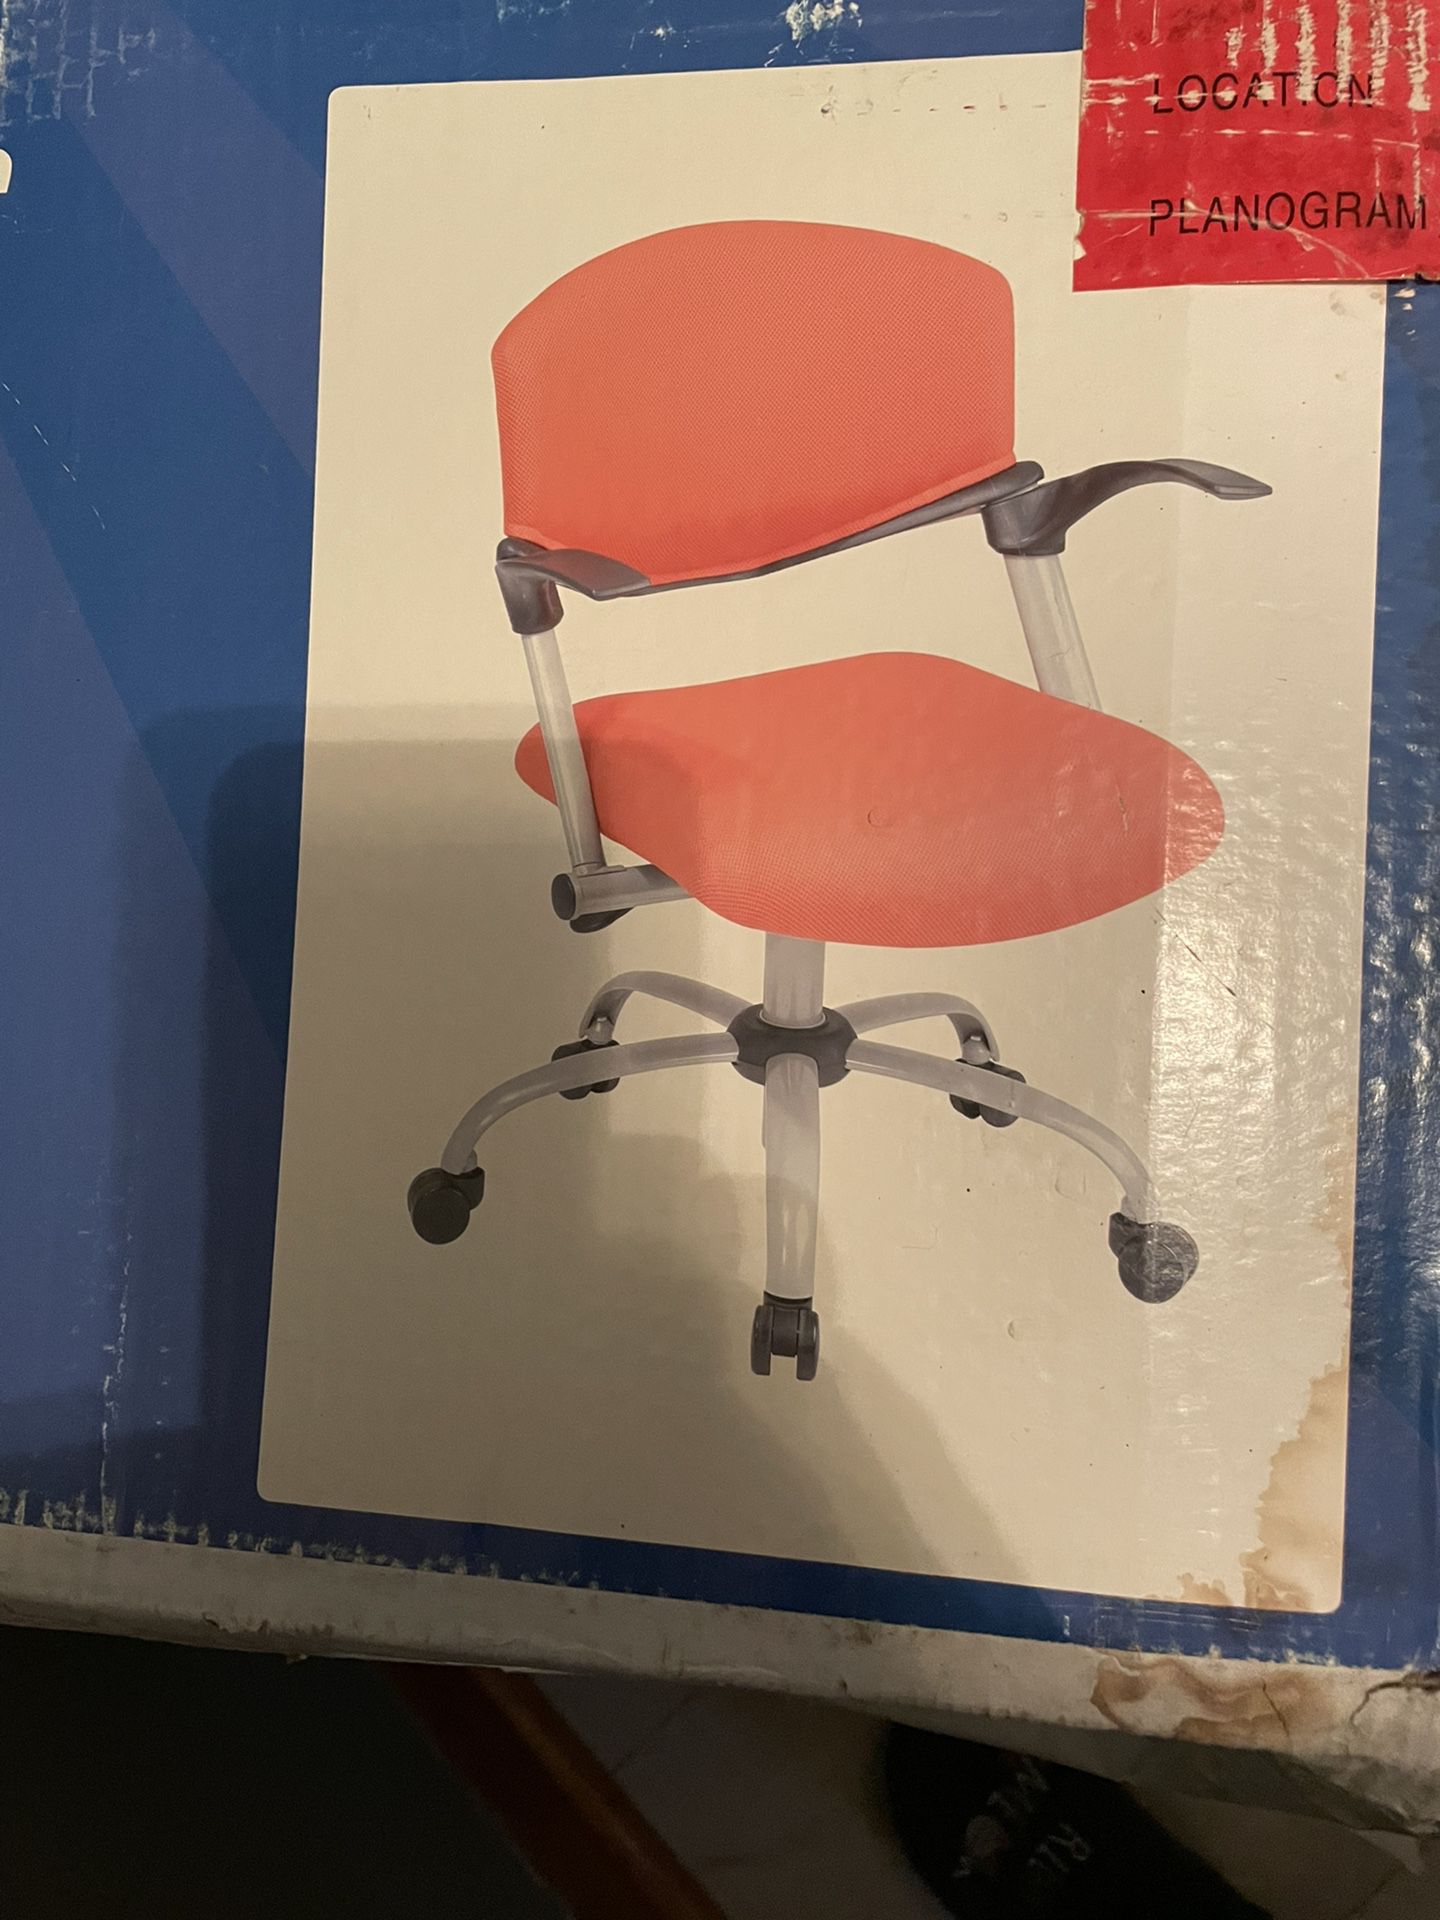  Desk Chair New Color Orange In Box 